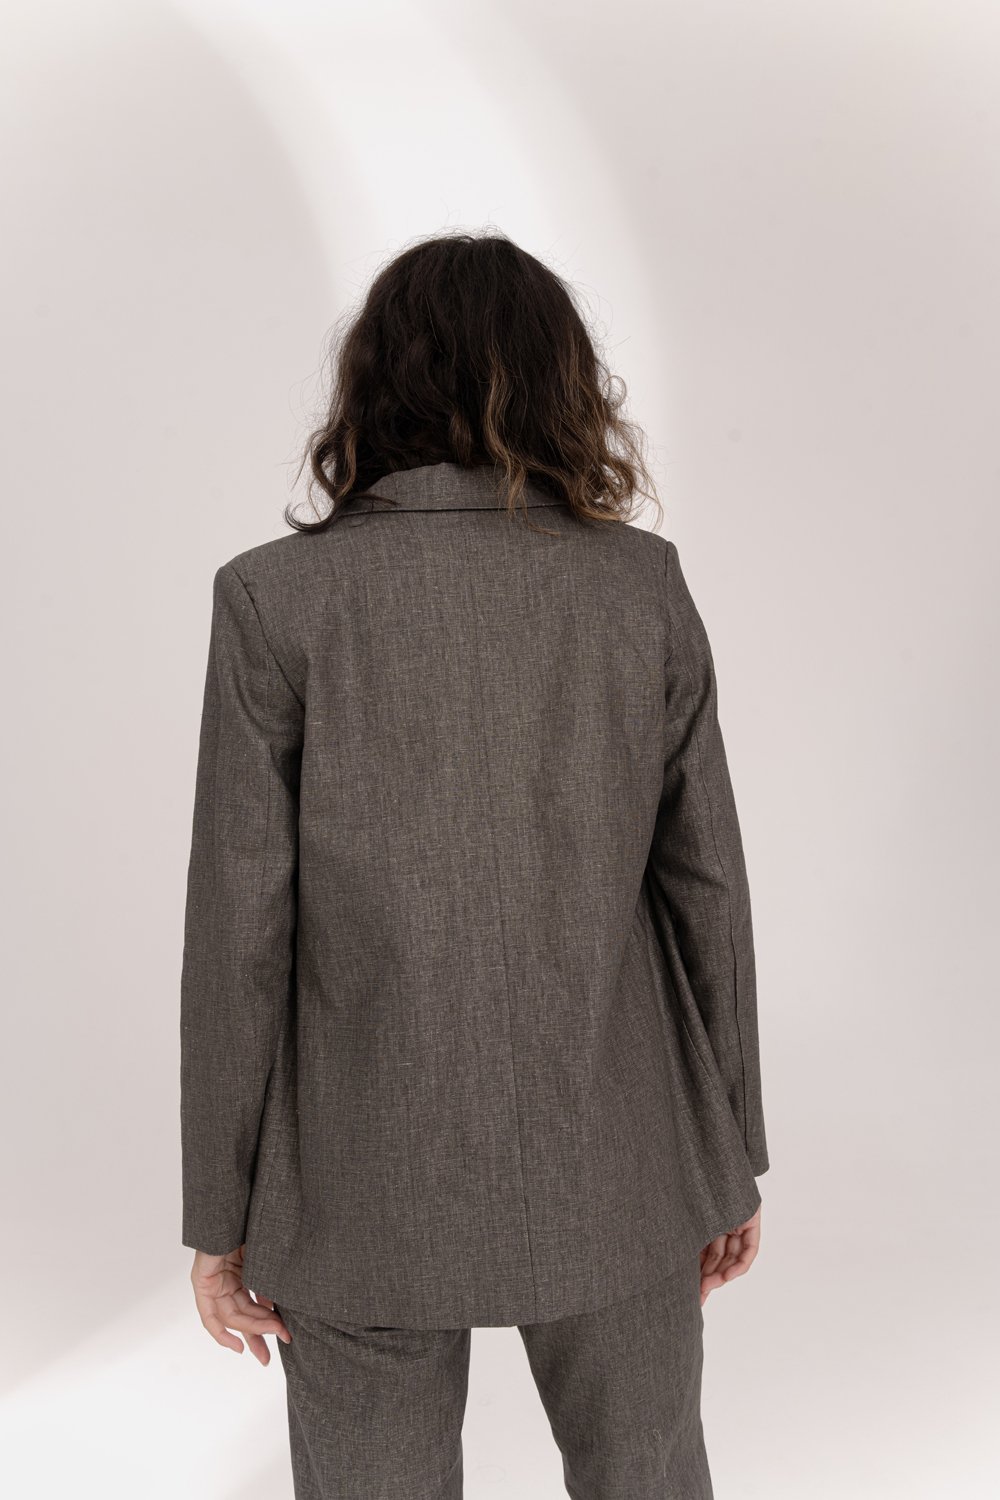 Oversized linen jacket in Hazelnut color